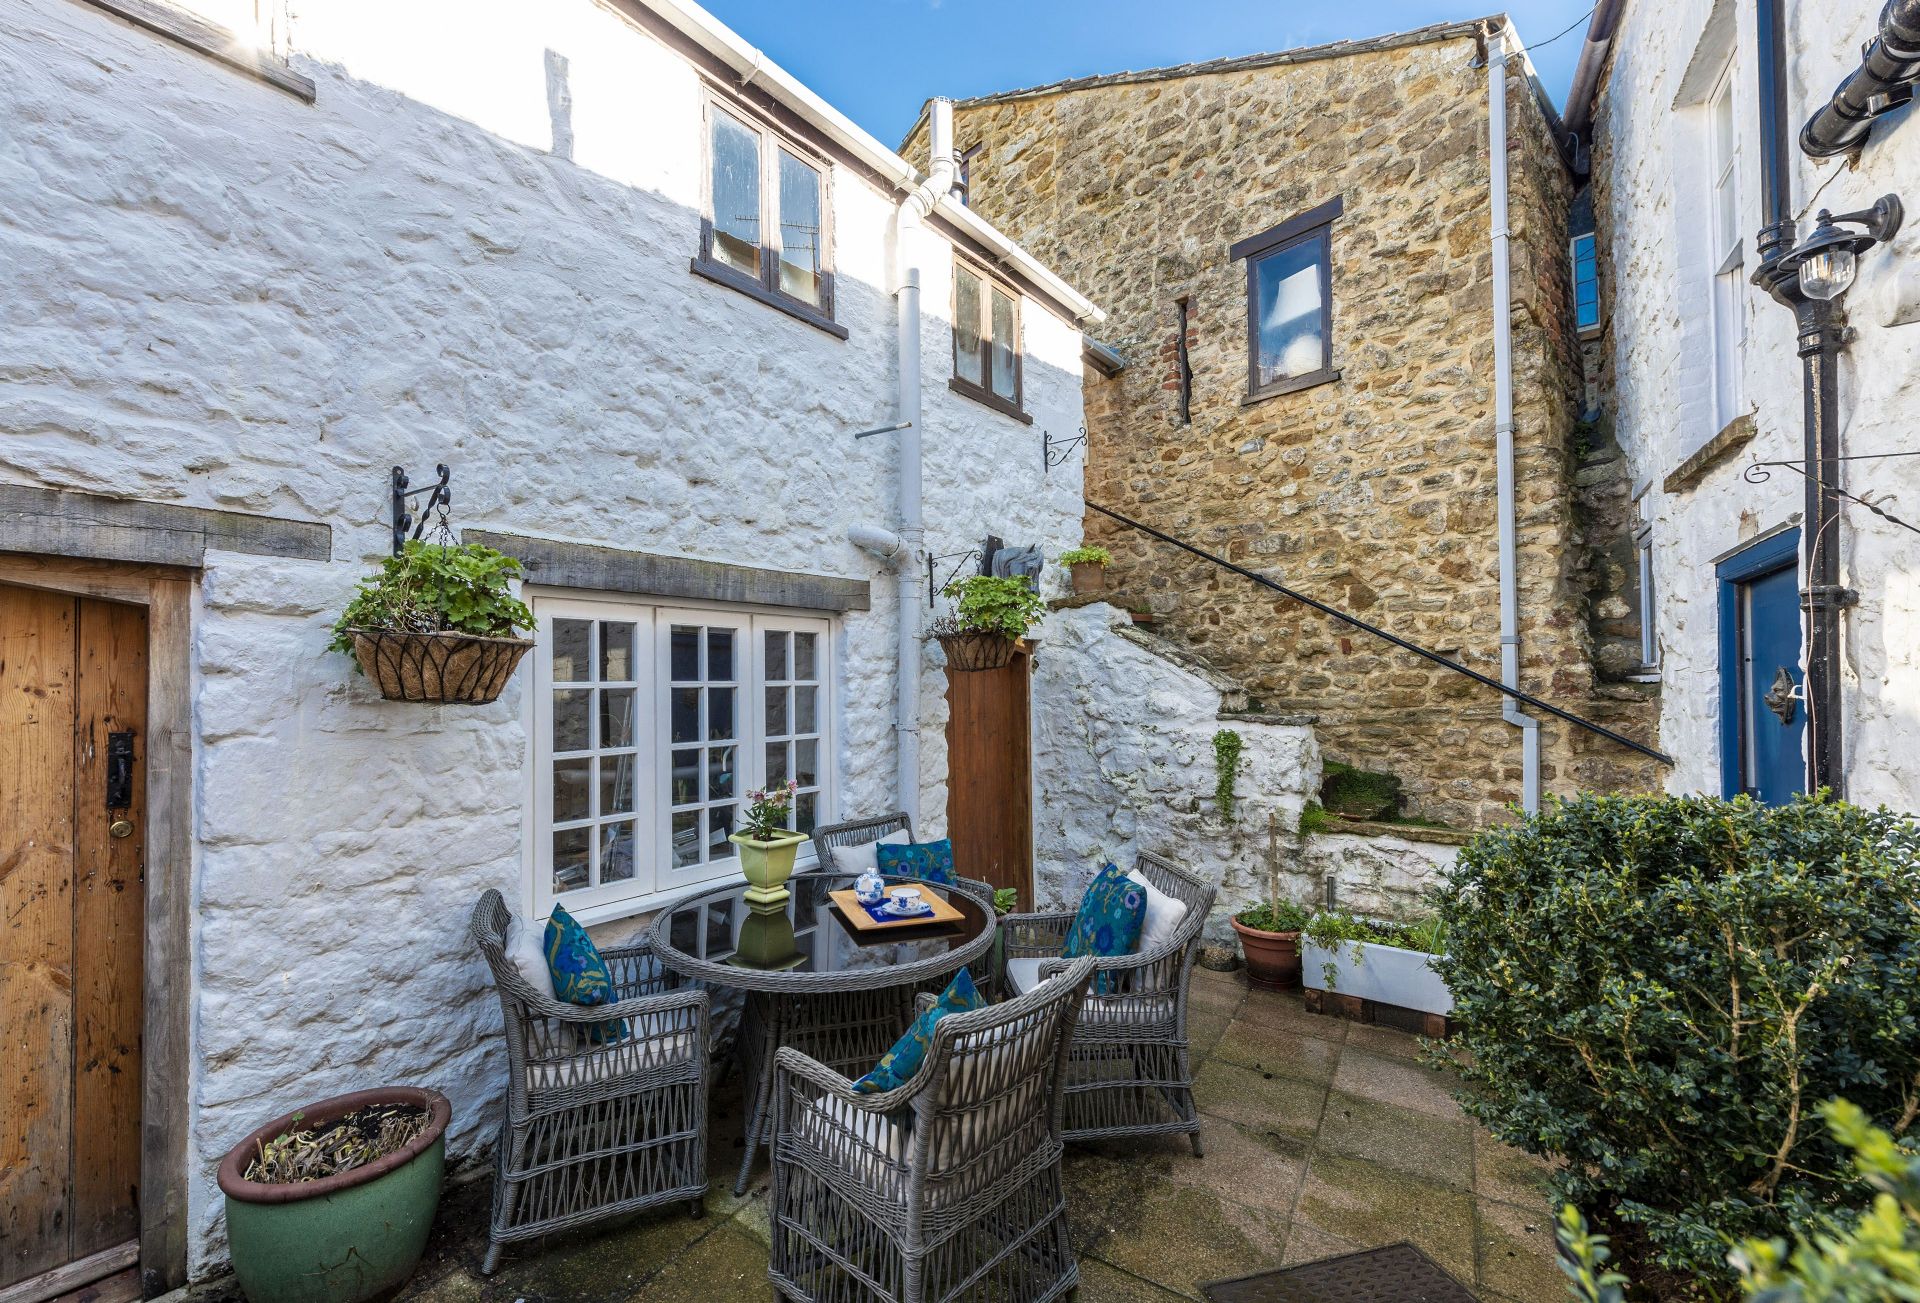 Dorset - Holiday Cottage Rental